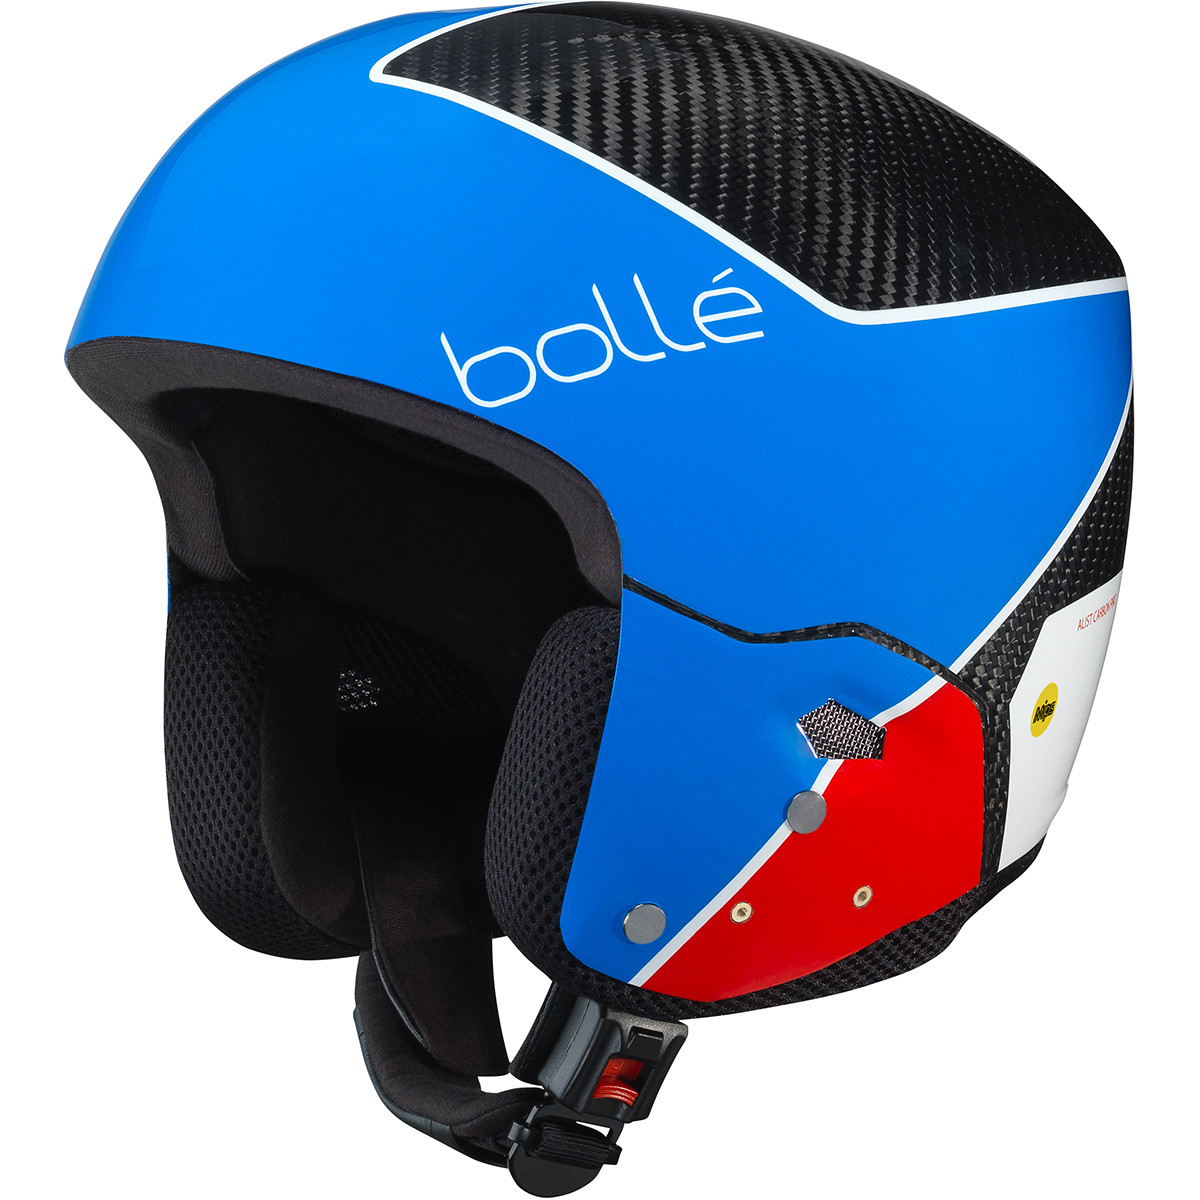 Casque de ski Bollé - Medalist Carbon Pro Mips - Bleu